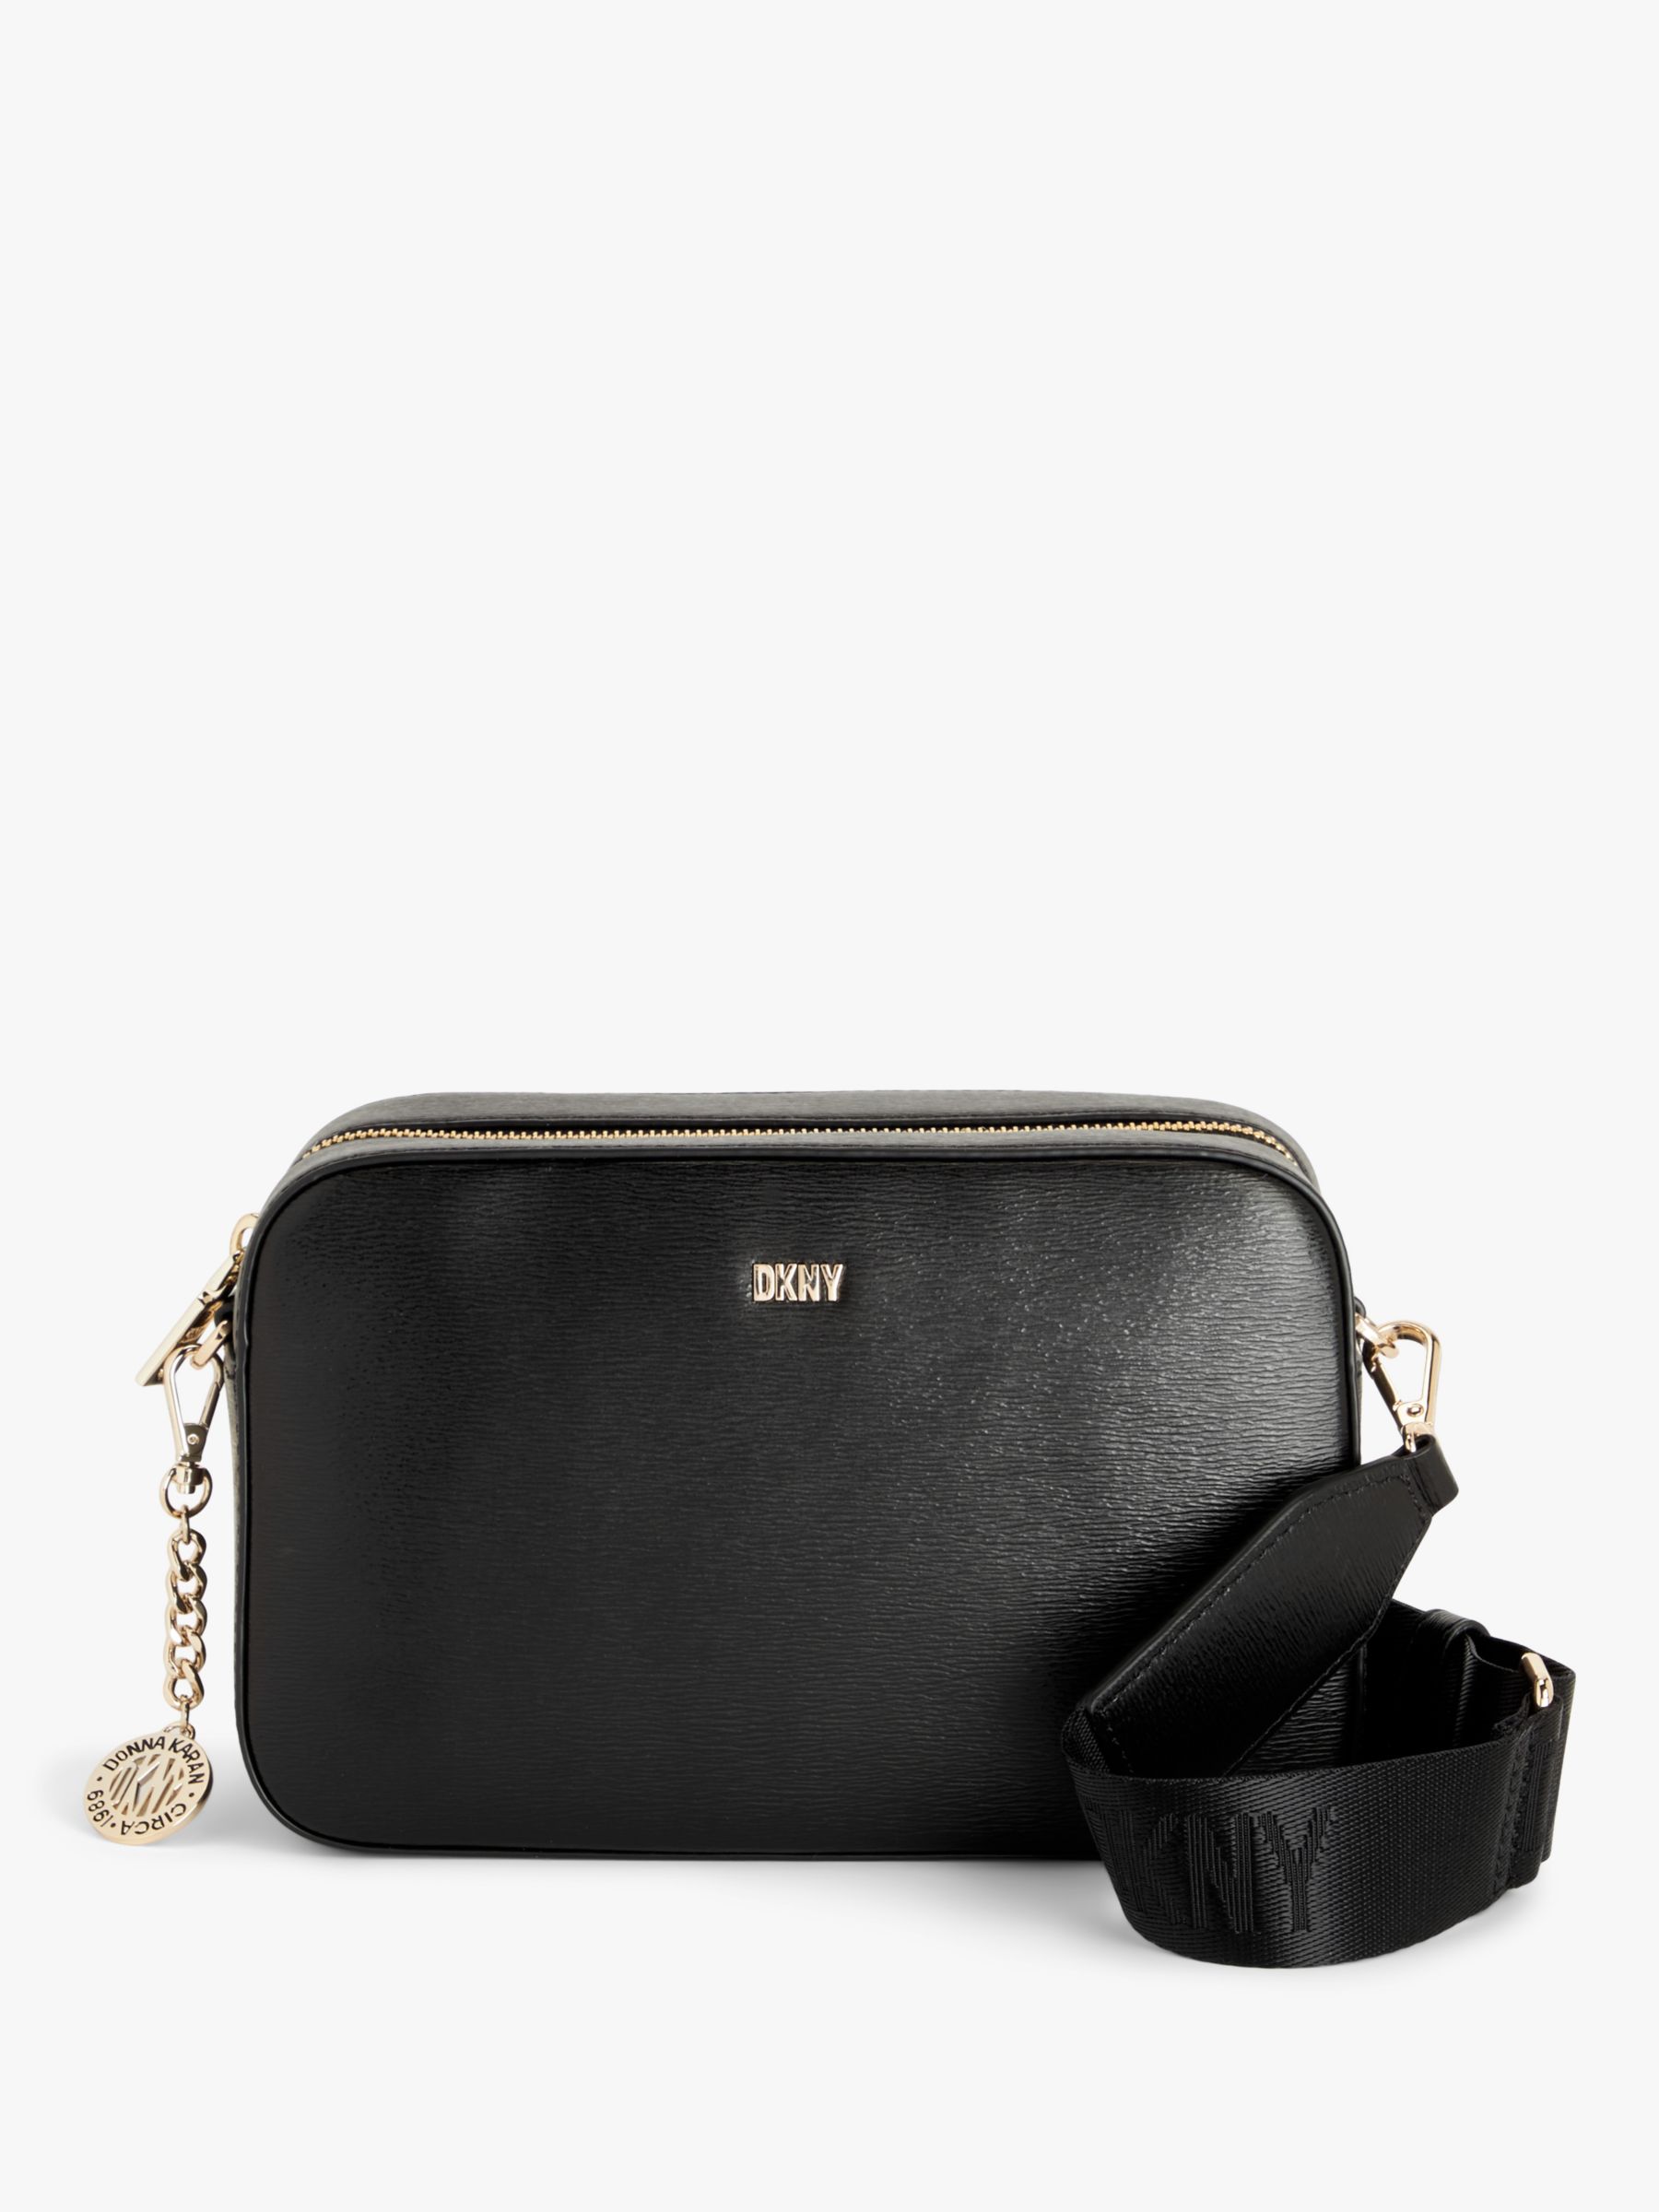 DKNY Elissa Large Leather Shoulder Bag, Black/Gold at John Lewis